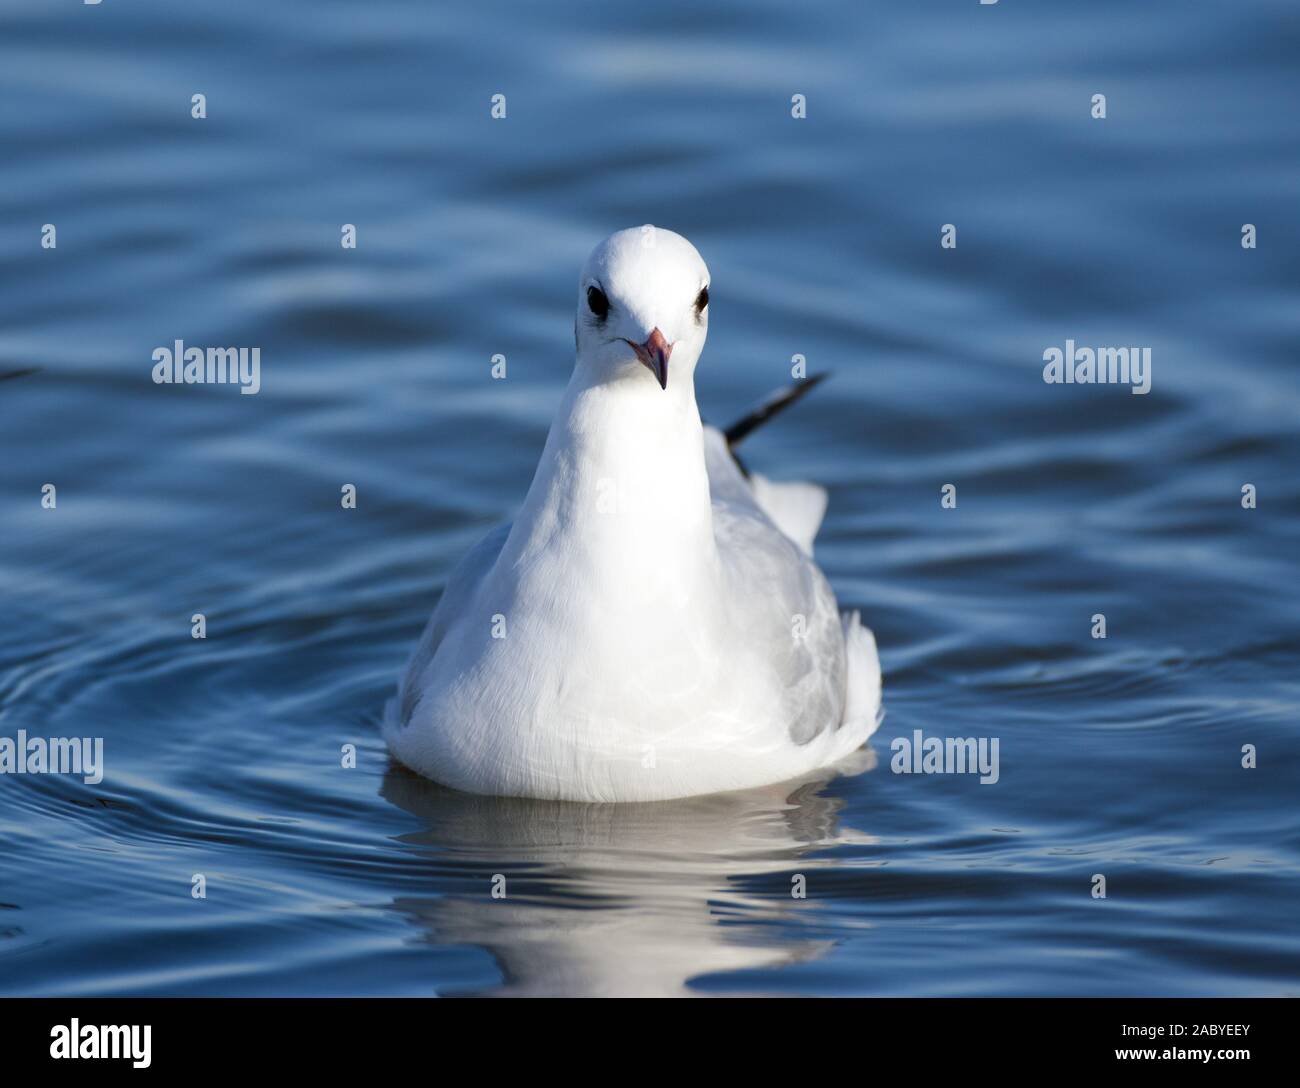 Black-headed gull swimming Stock Photo